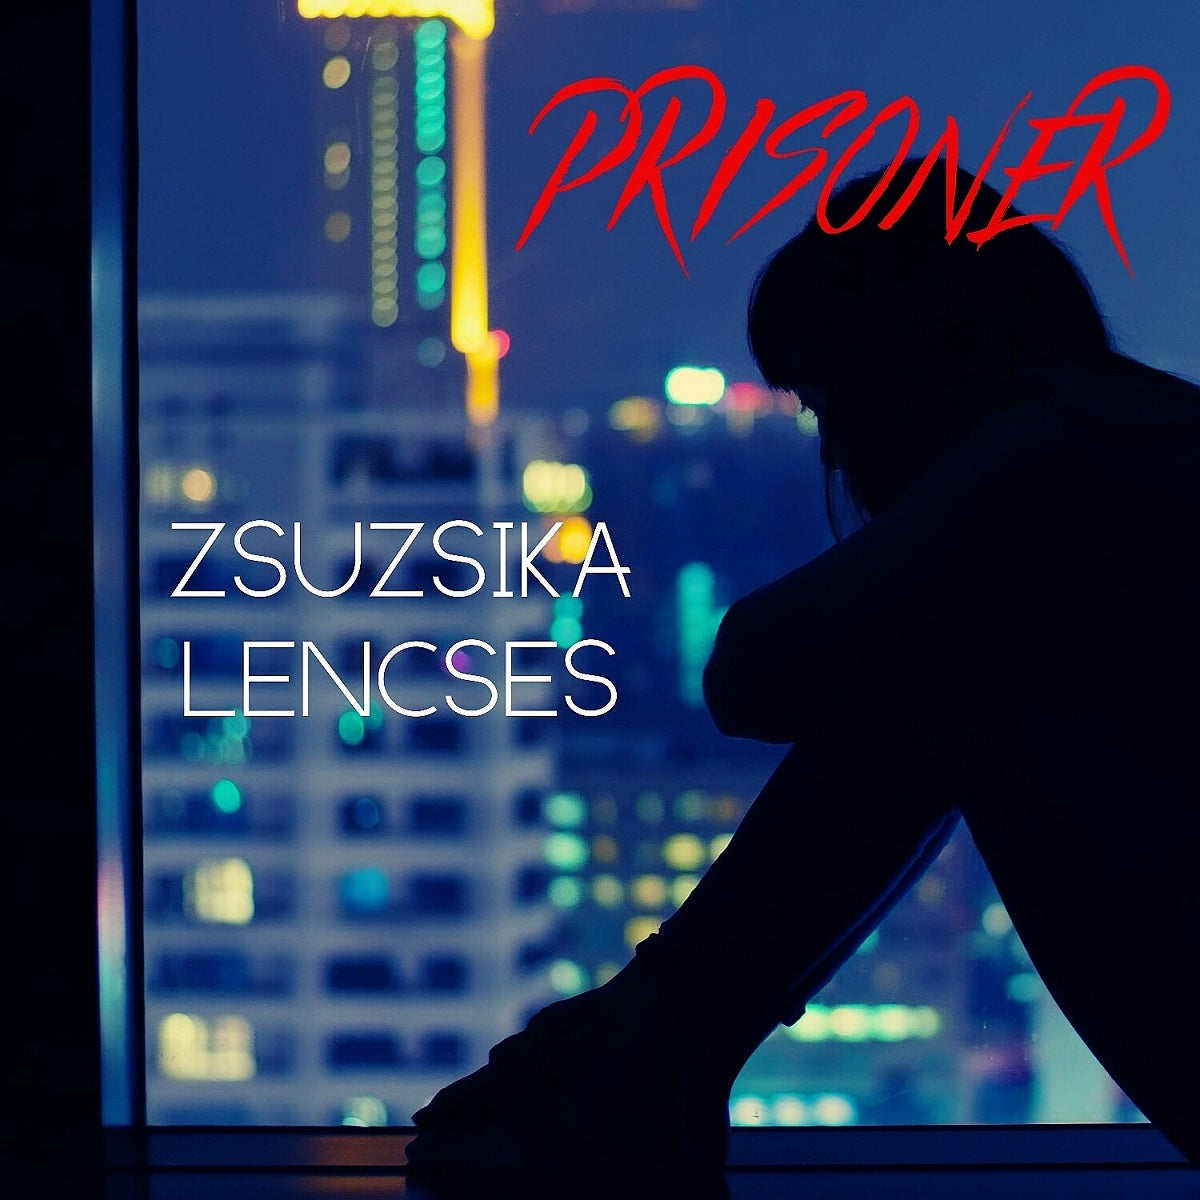 Zsuzsika Lencses – ‘Prisoner’